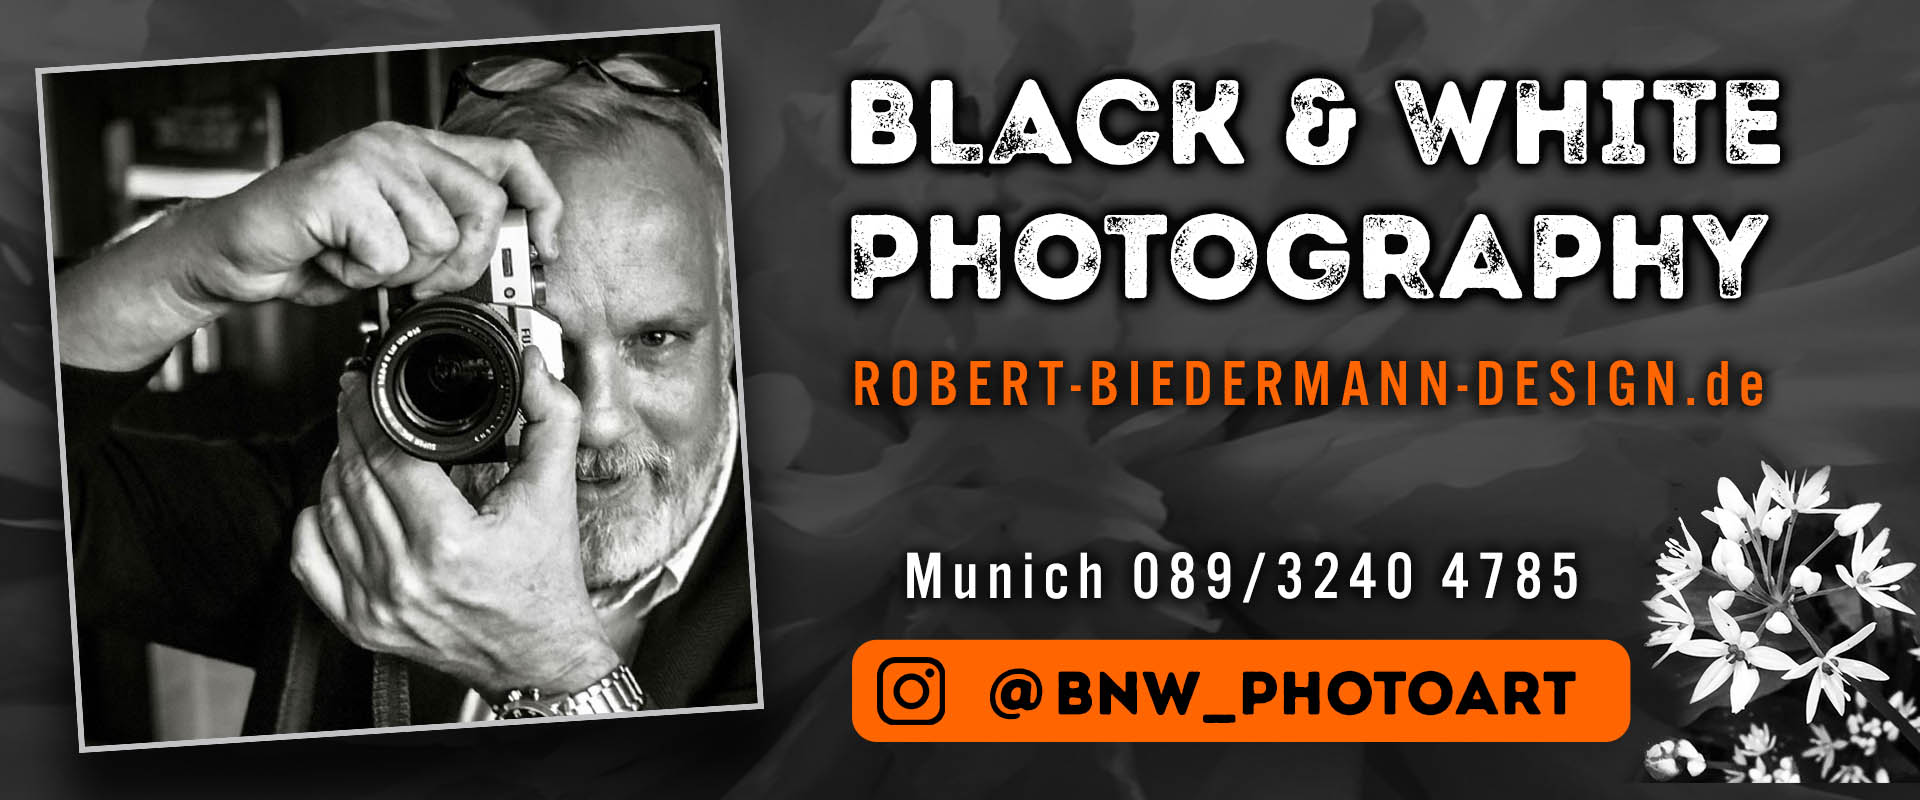 BNW_Photoart_Robert-Biedermann-Design